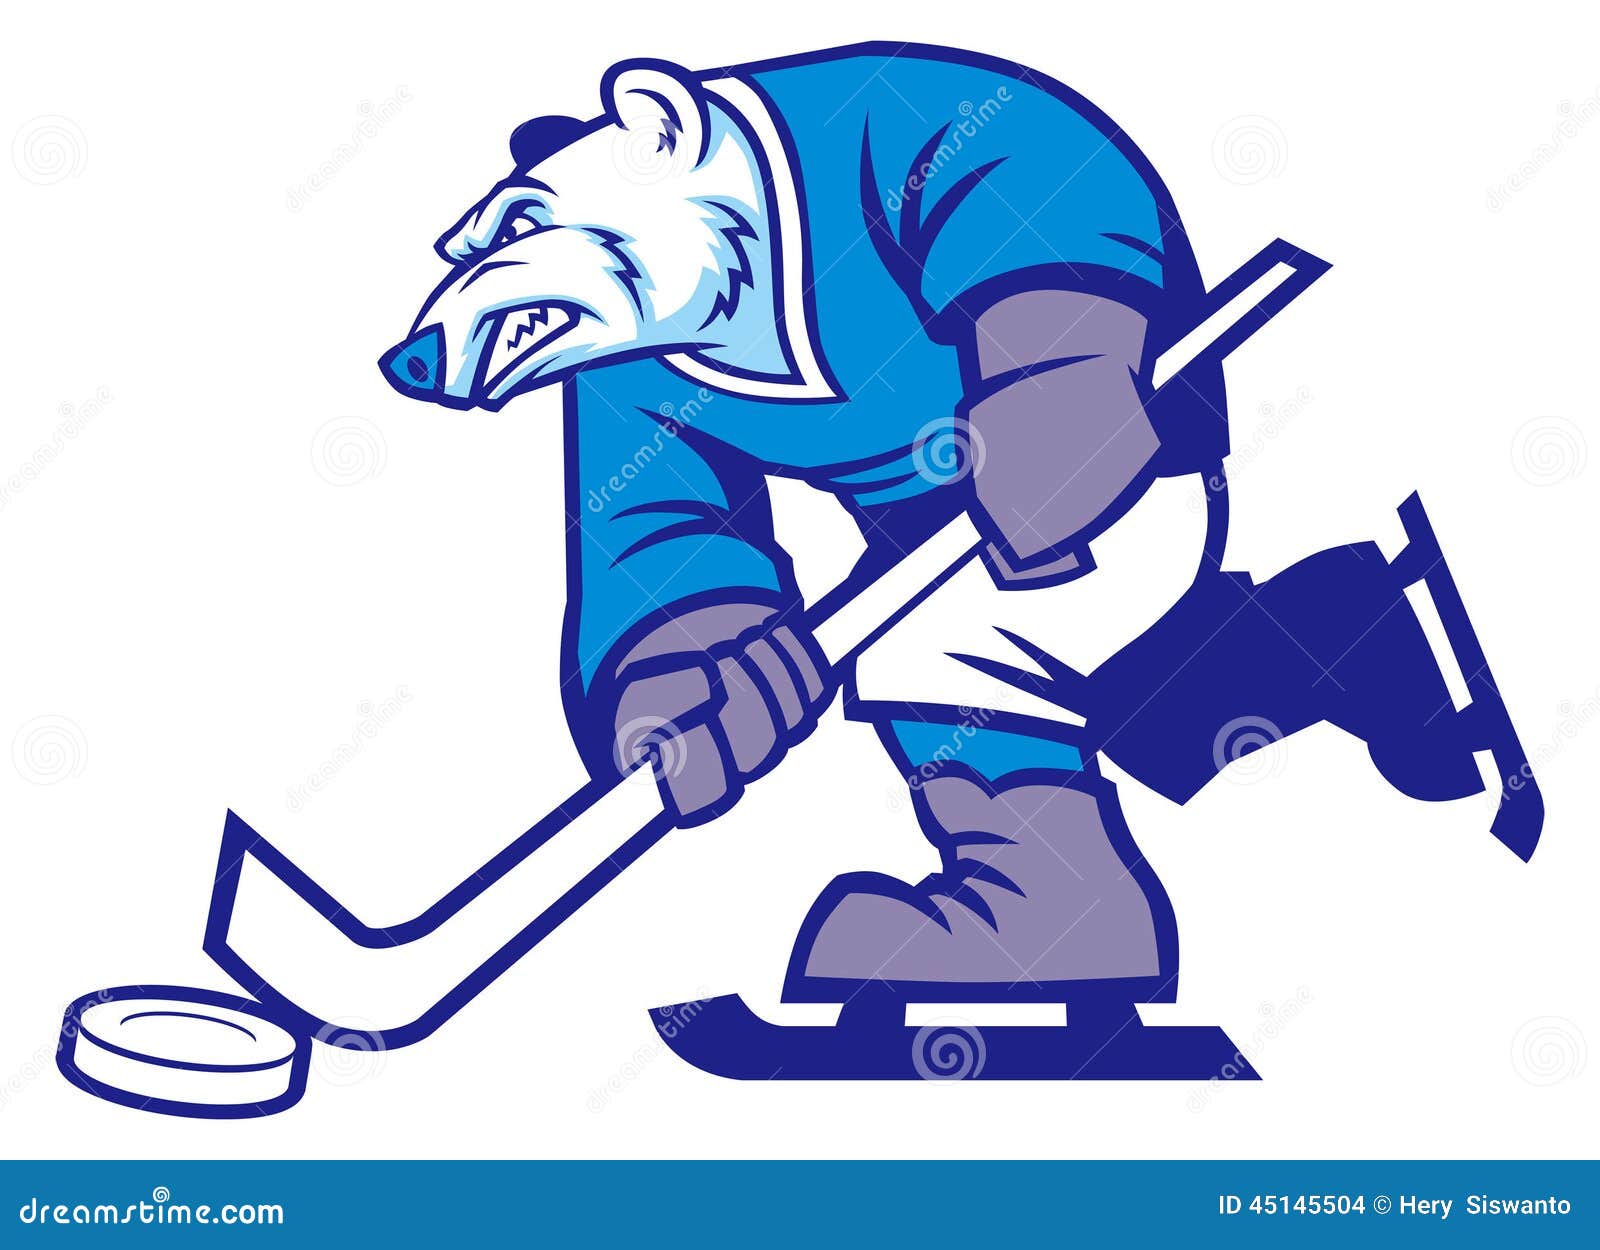 ice hockey polar bear mascot